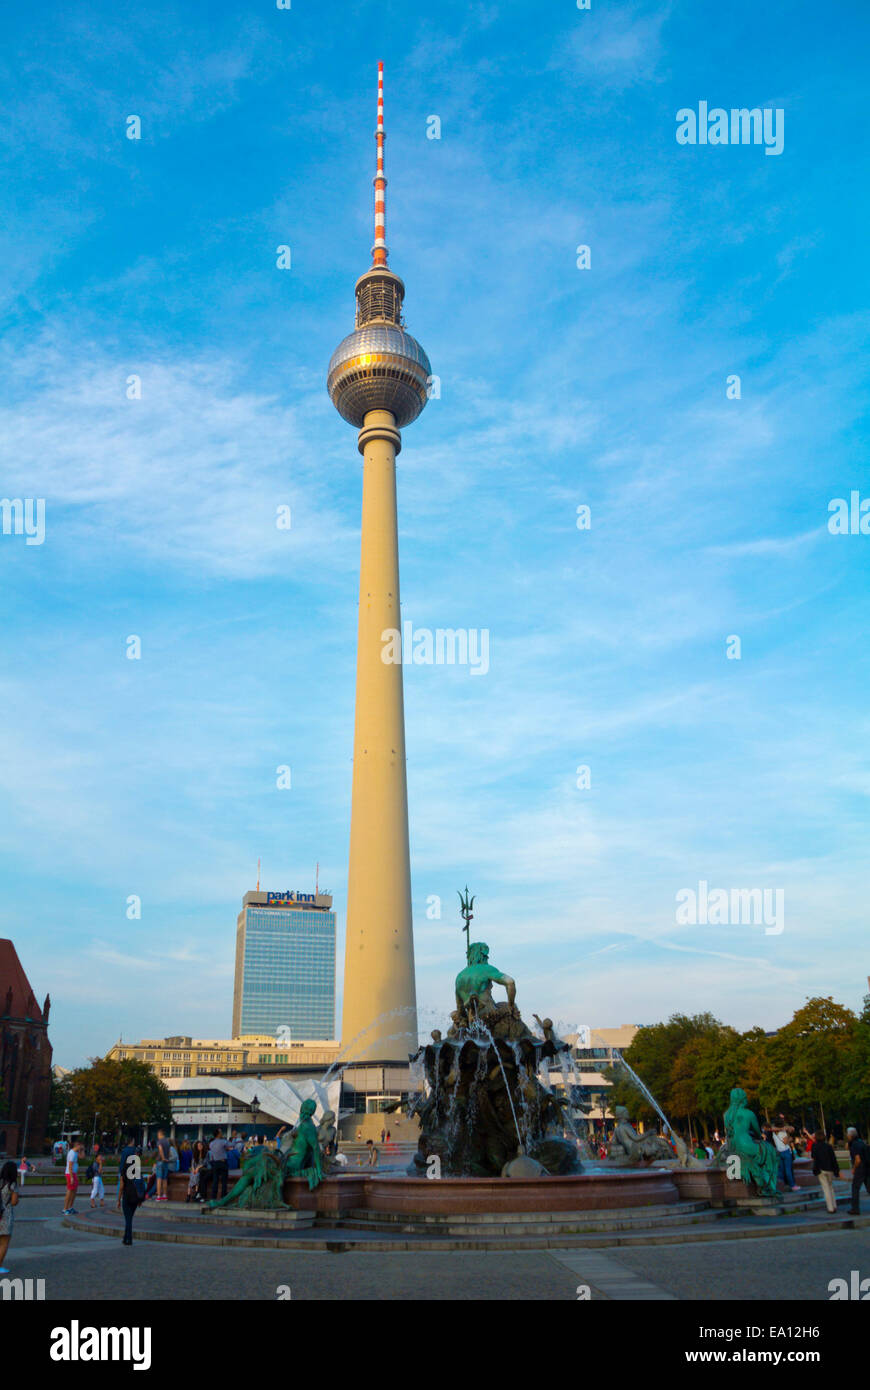 Neptunbrunnen-Brunnen und Fernsehturm, Berliner Fernsehturm, Alexanderplatz quadratisch, Bezirk Mitte, Ost Berlin, Deutschland Stockfoto